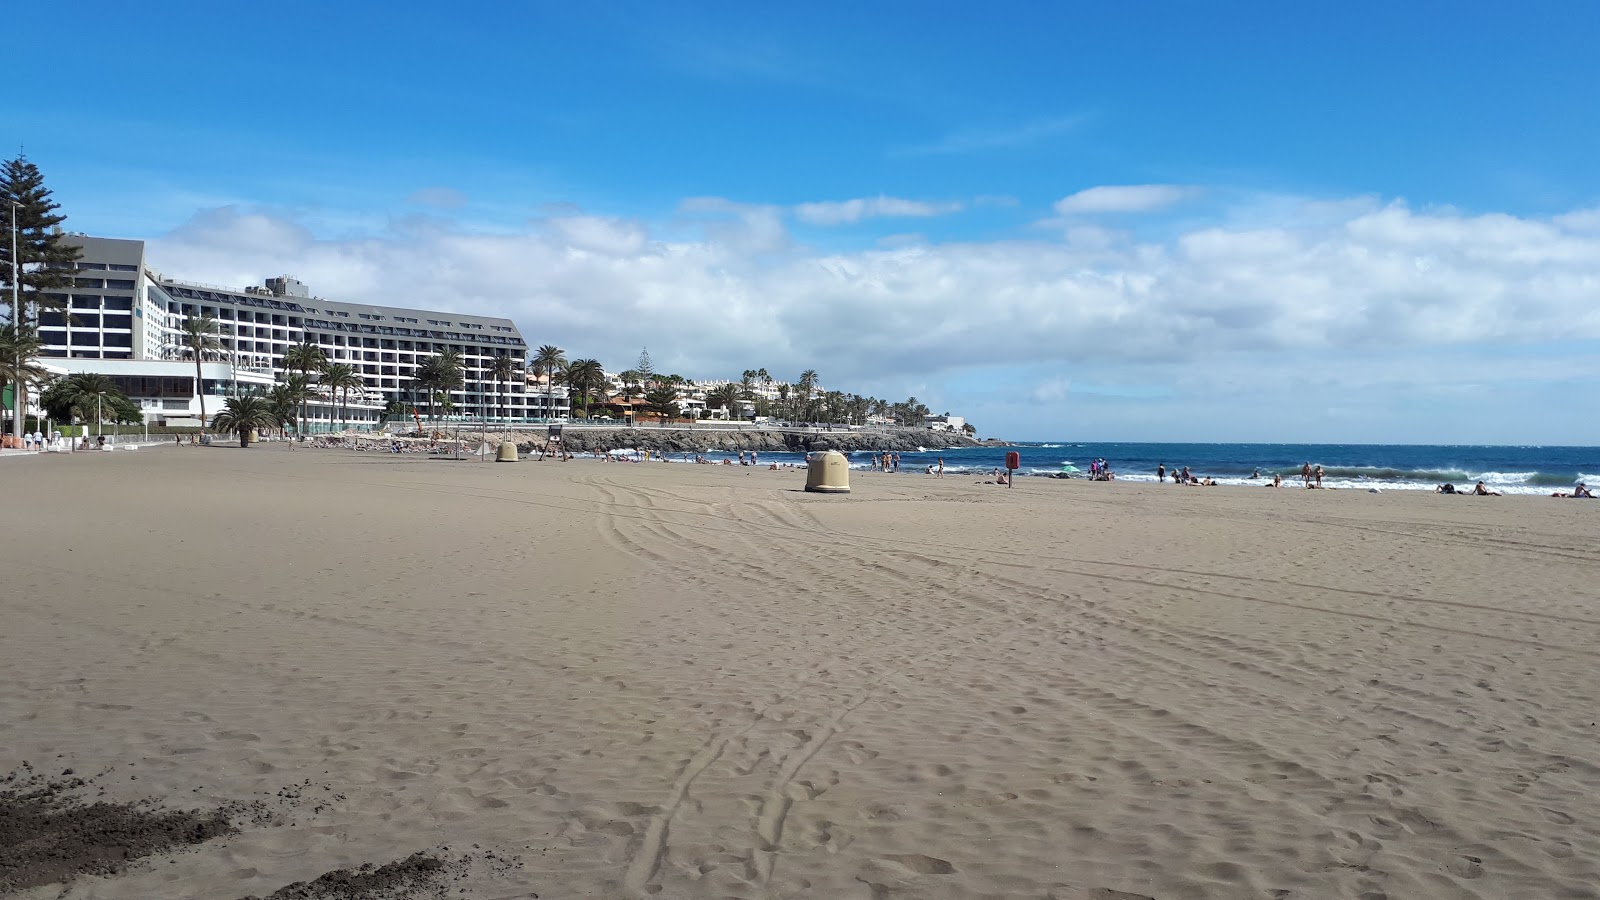 Foto af Playa de las Burras - populært sted blandt afslapningskendere